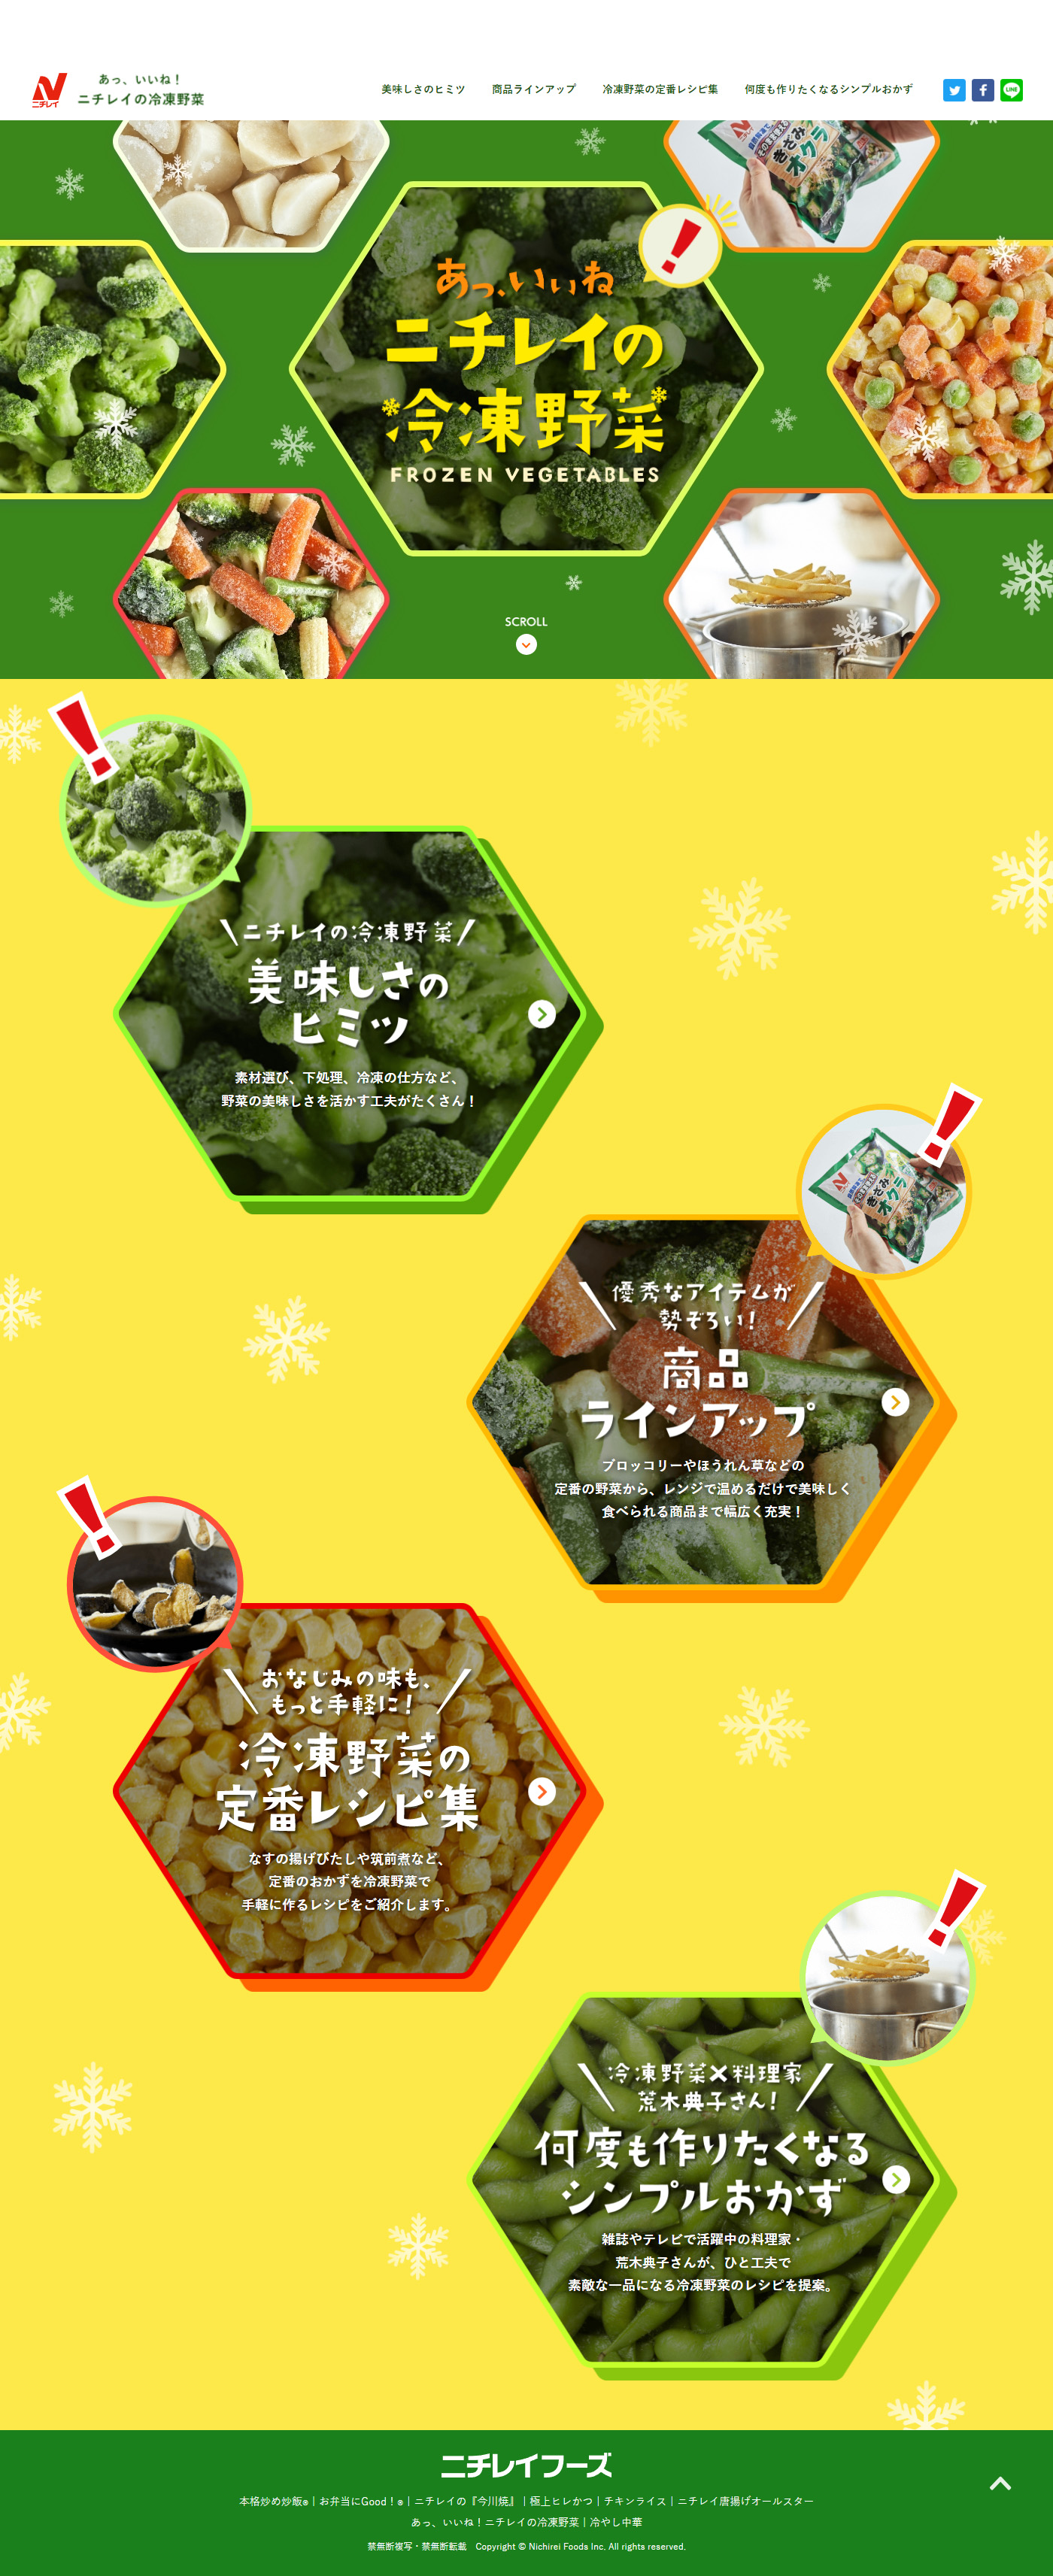 ニチレイの冷凍野菜_pc_1